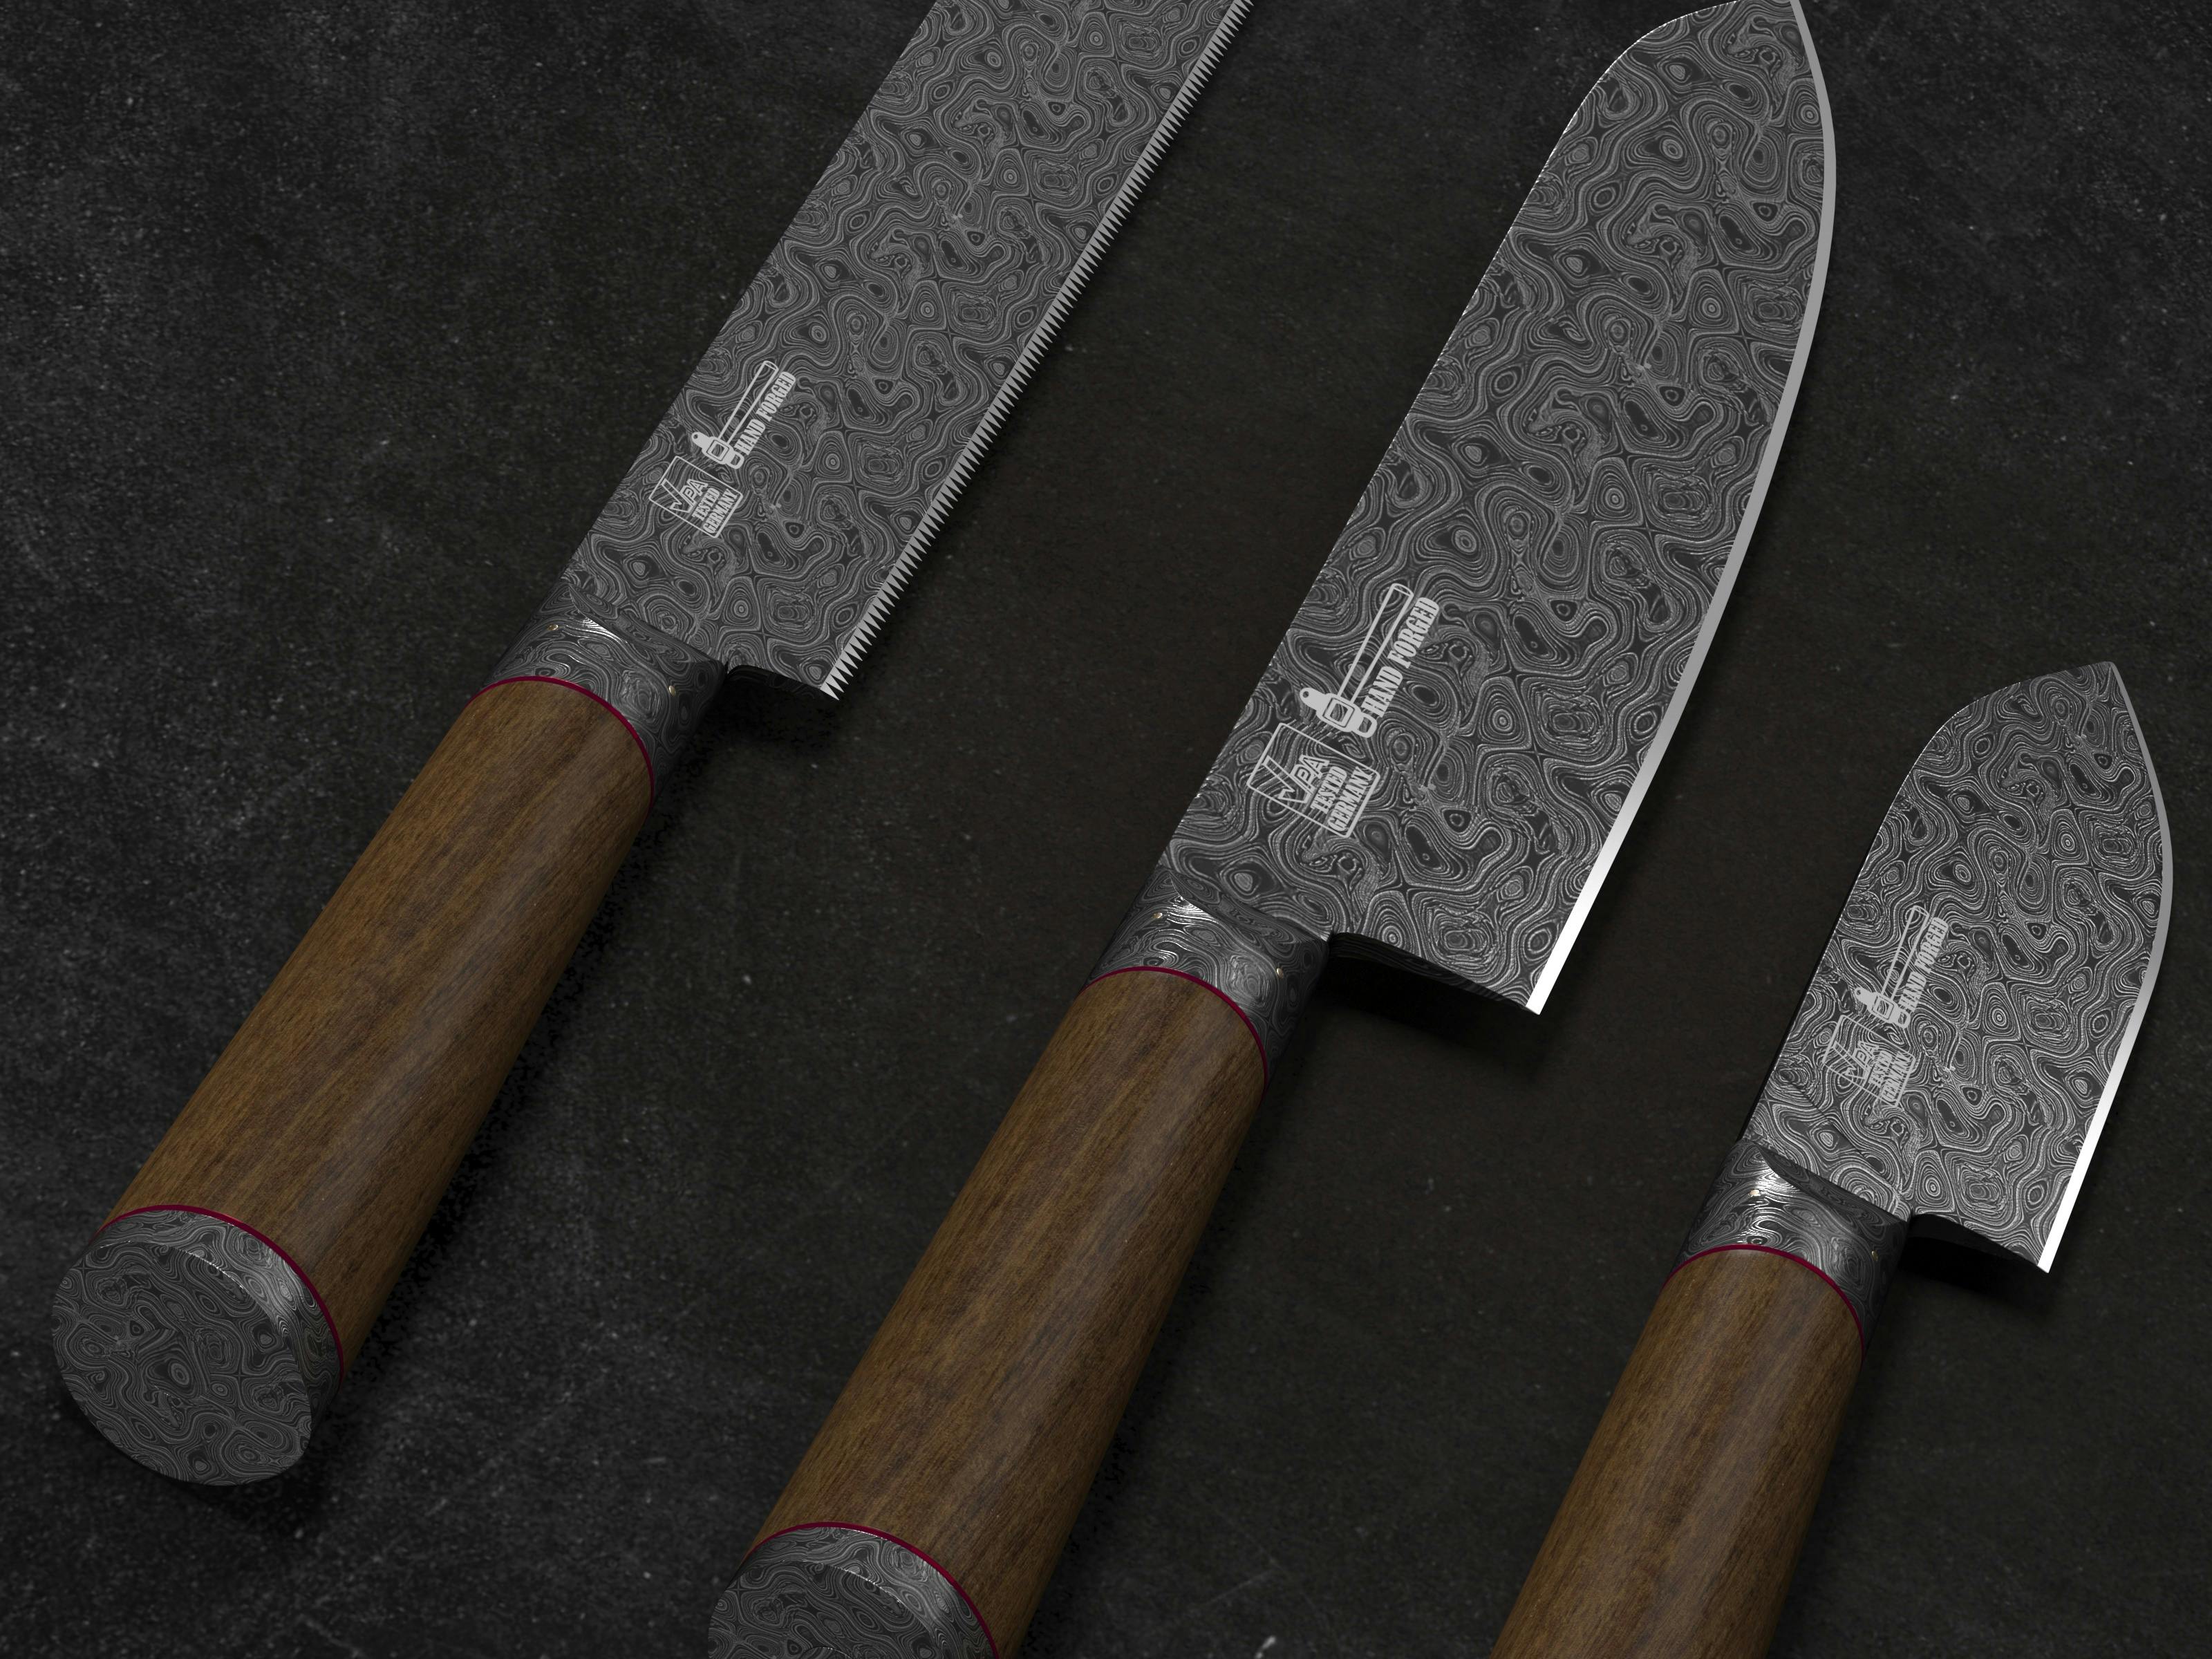 Un ensemble de couteaux | Source : Pexels